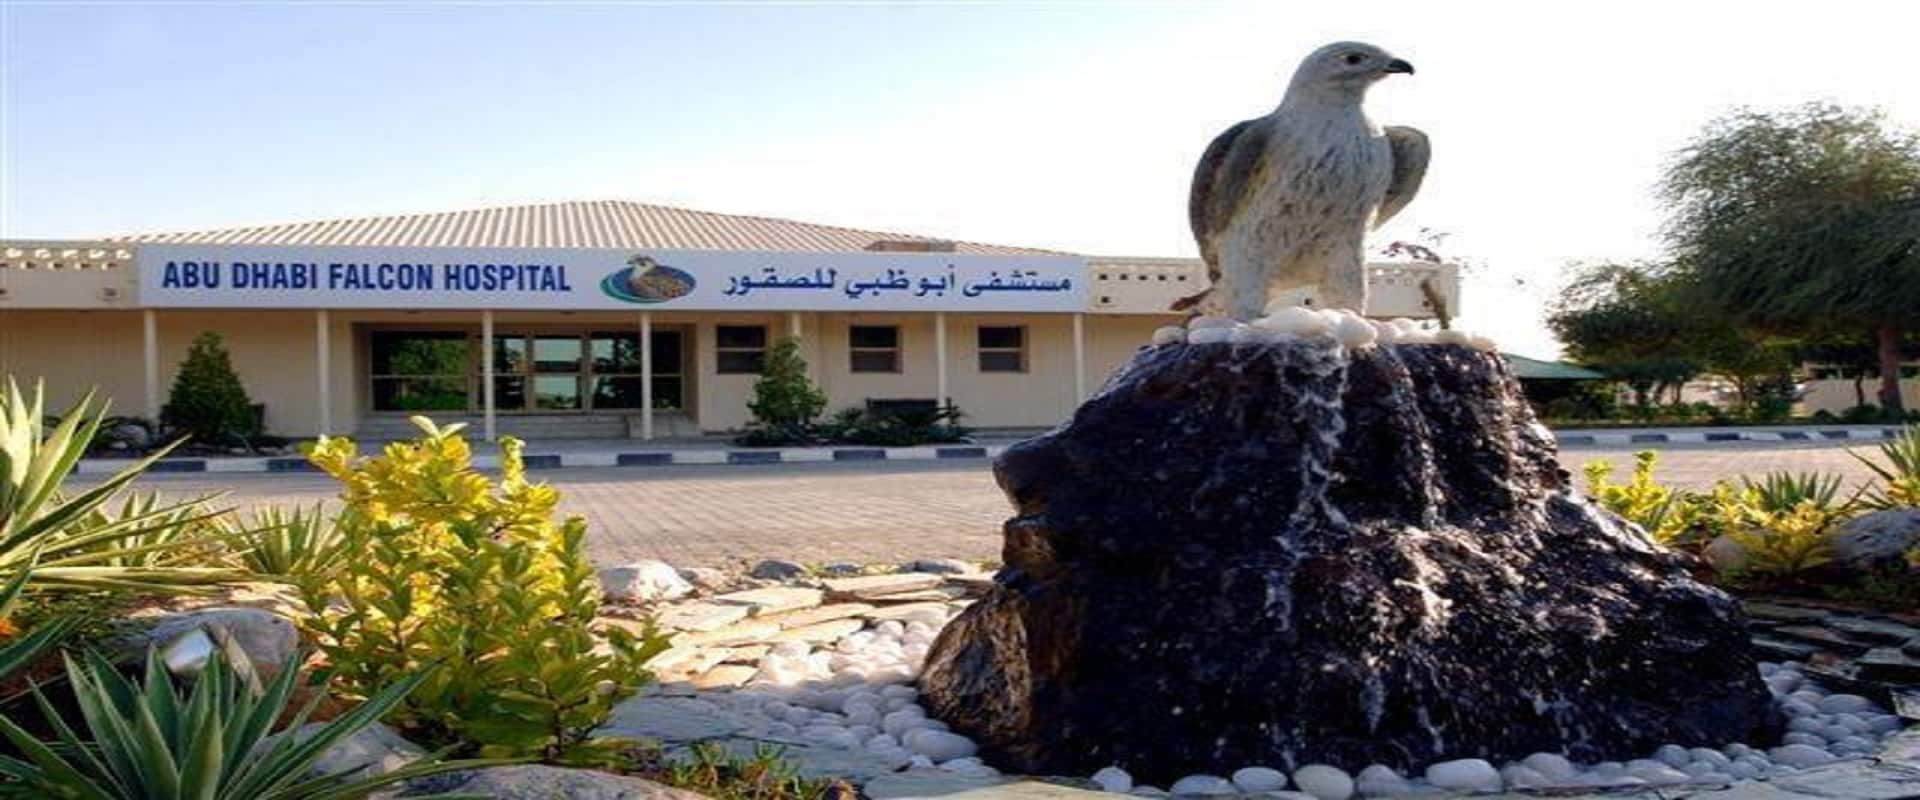 Obilazak Abu Dhabi Falcon Hospital